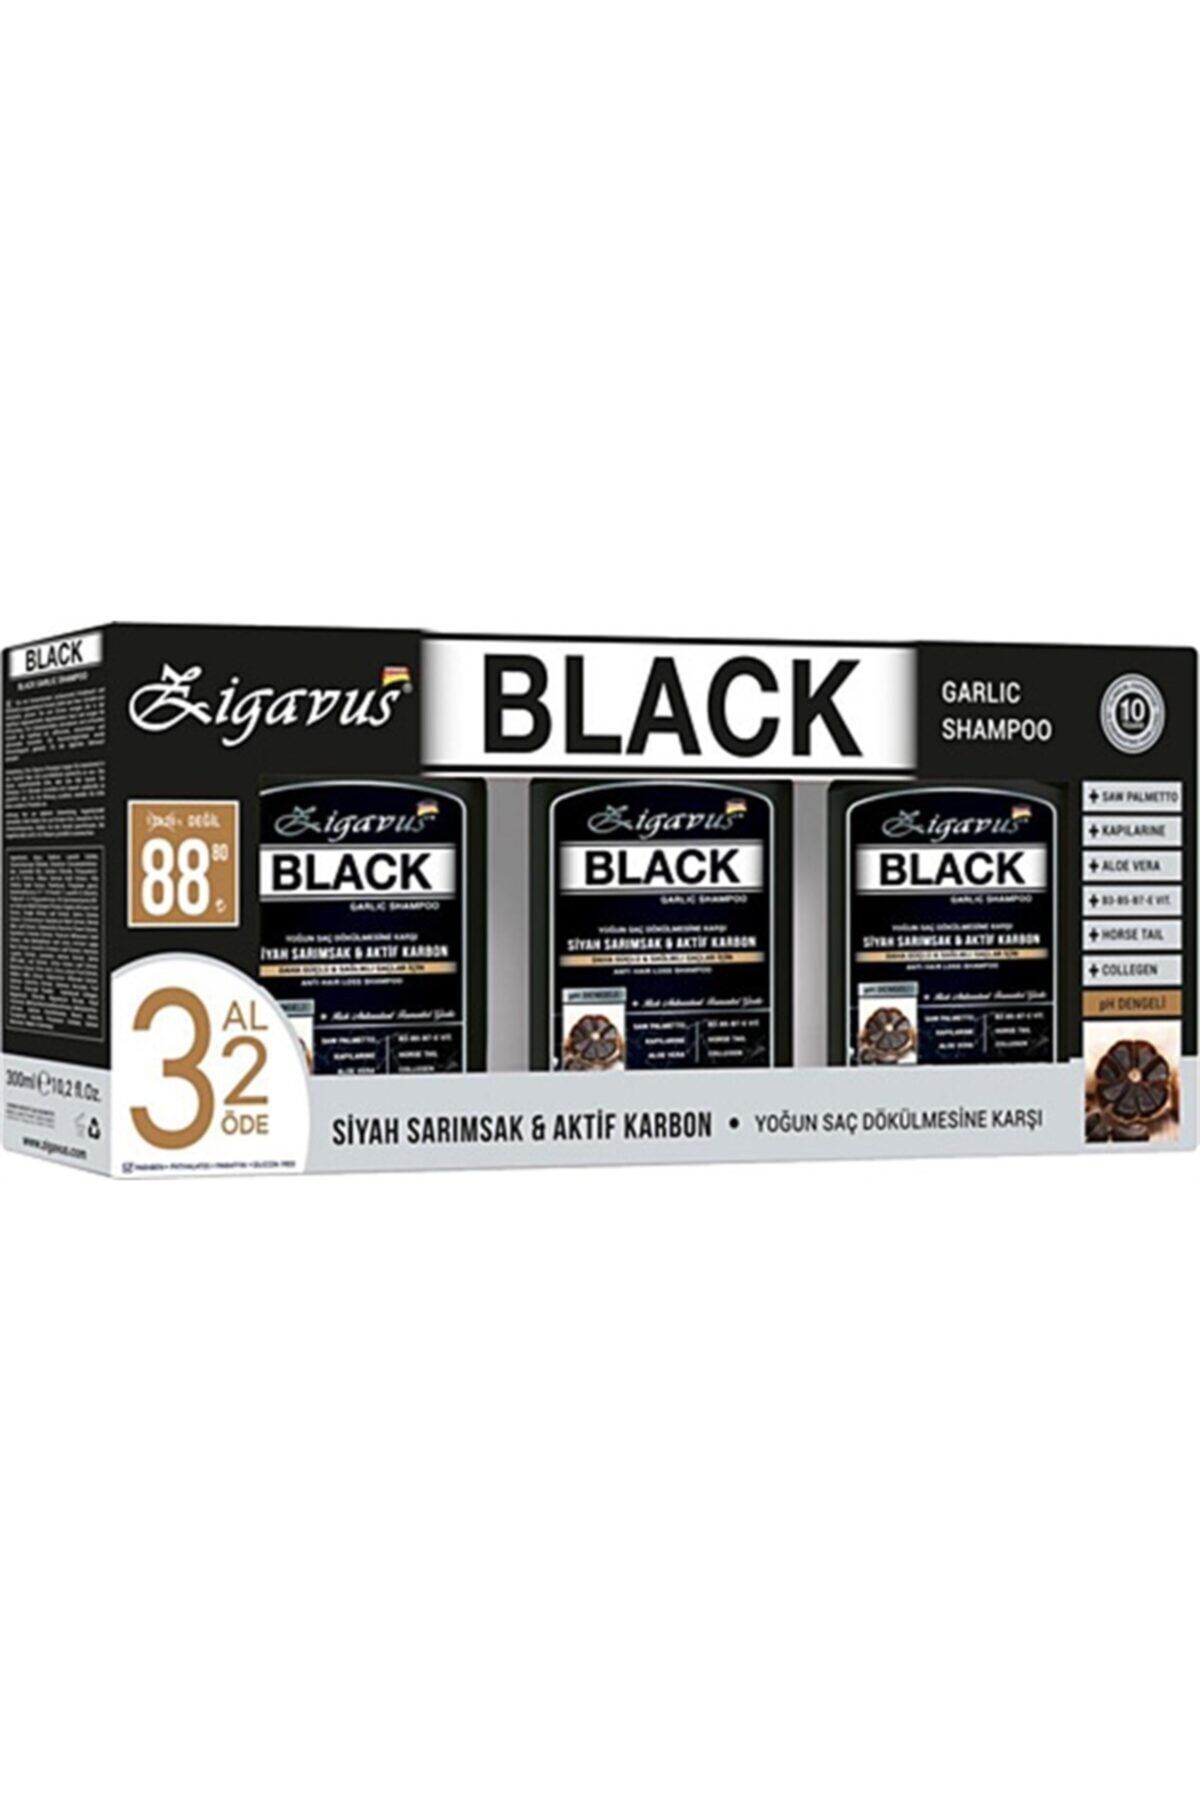 Zigavus Black Siyah Sarımsaklı Şampuan 300 ml 3 Al 2 Öde